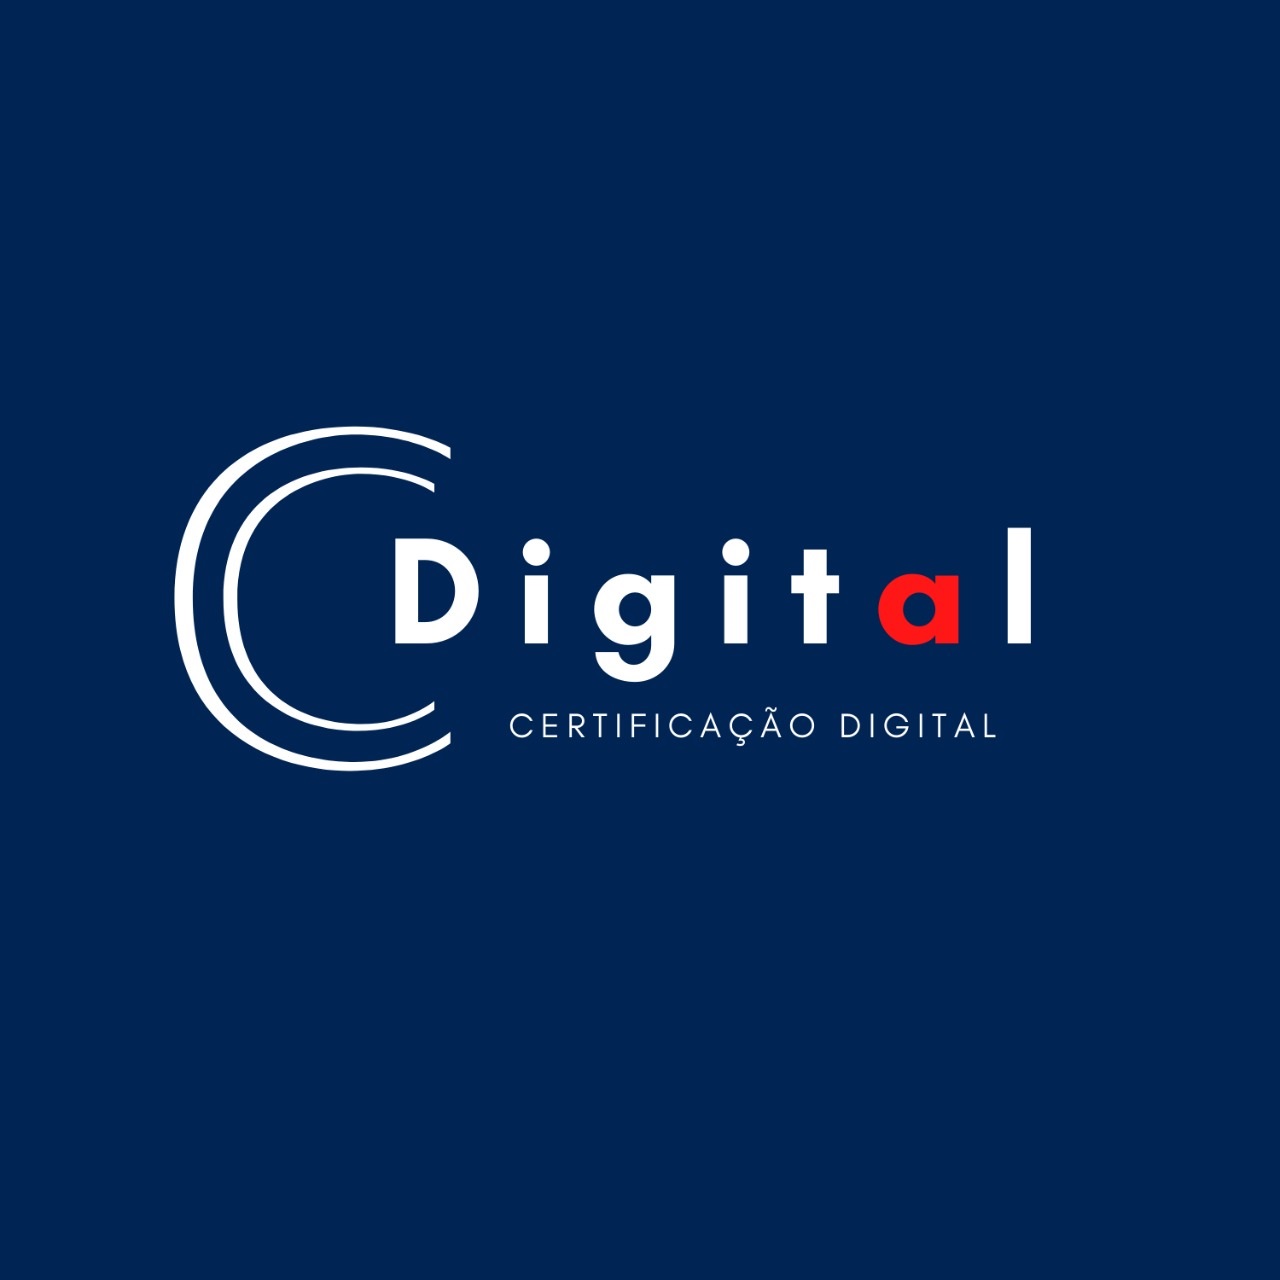 Logotipo do parceiro AR Cdigital &#8211; RHEDECONT Assessoria Contábil e Empresarial &#8211; 5%